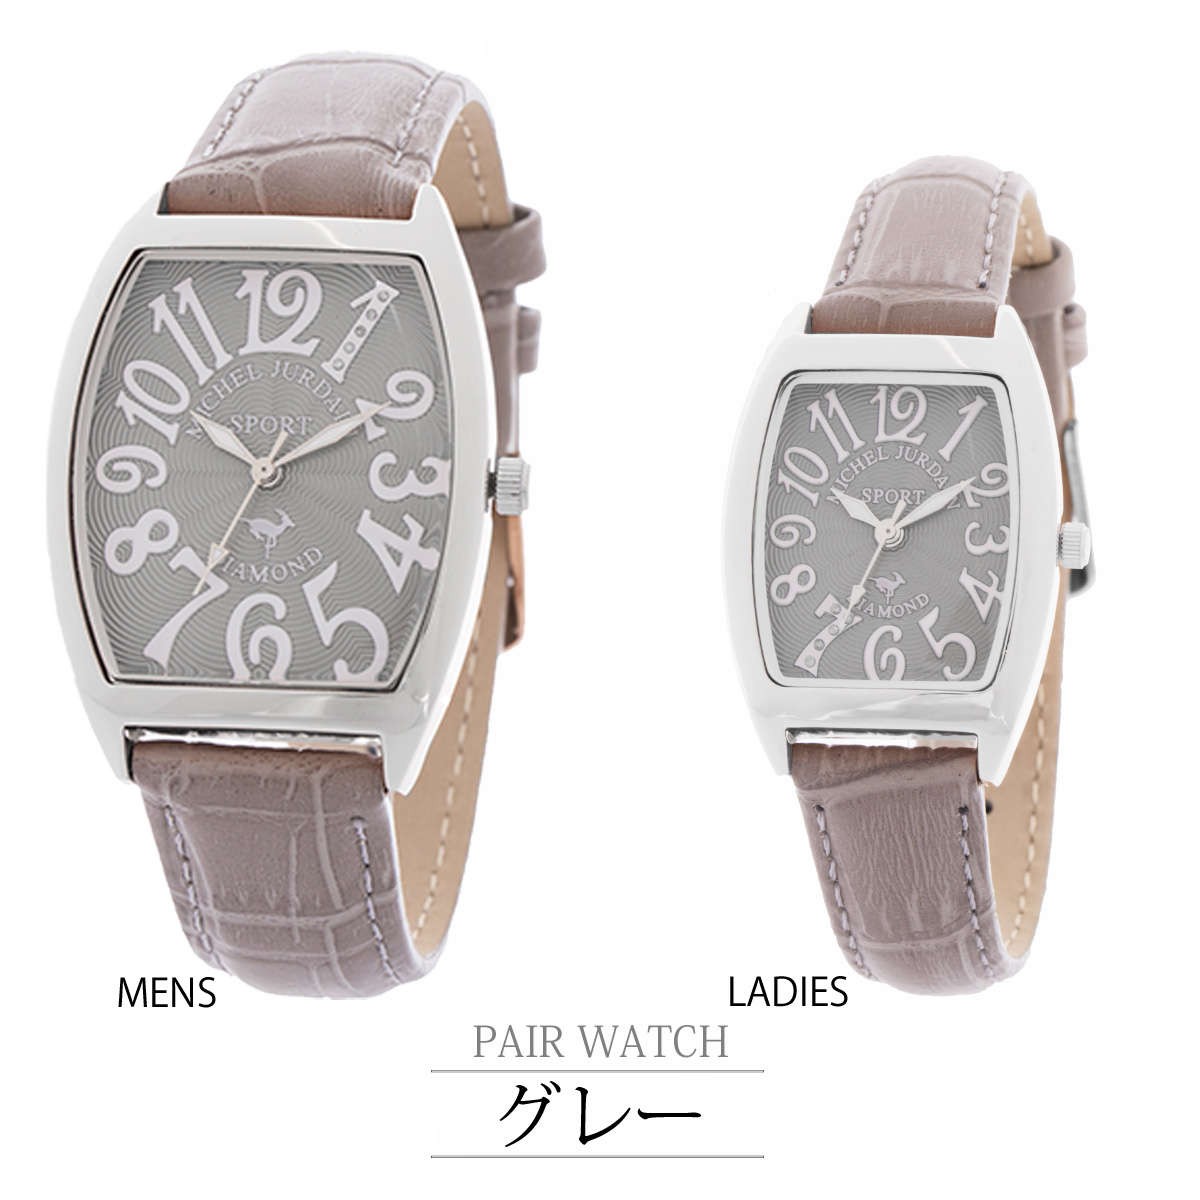 ミッシェルジョルダン 腕時計 メンズ レディース ペアウォッチ SPORTダイヤモンド SG/SL1000 :mj-p01:セレクトショップ